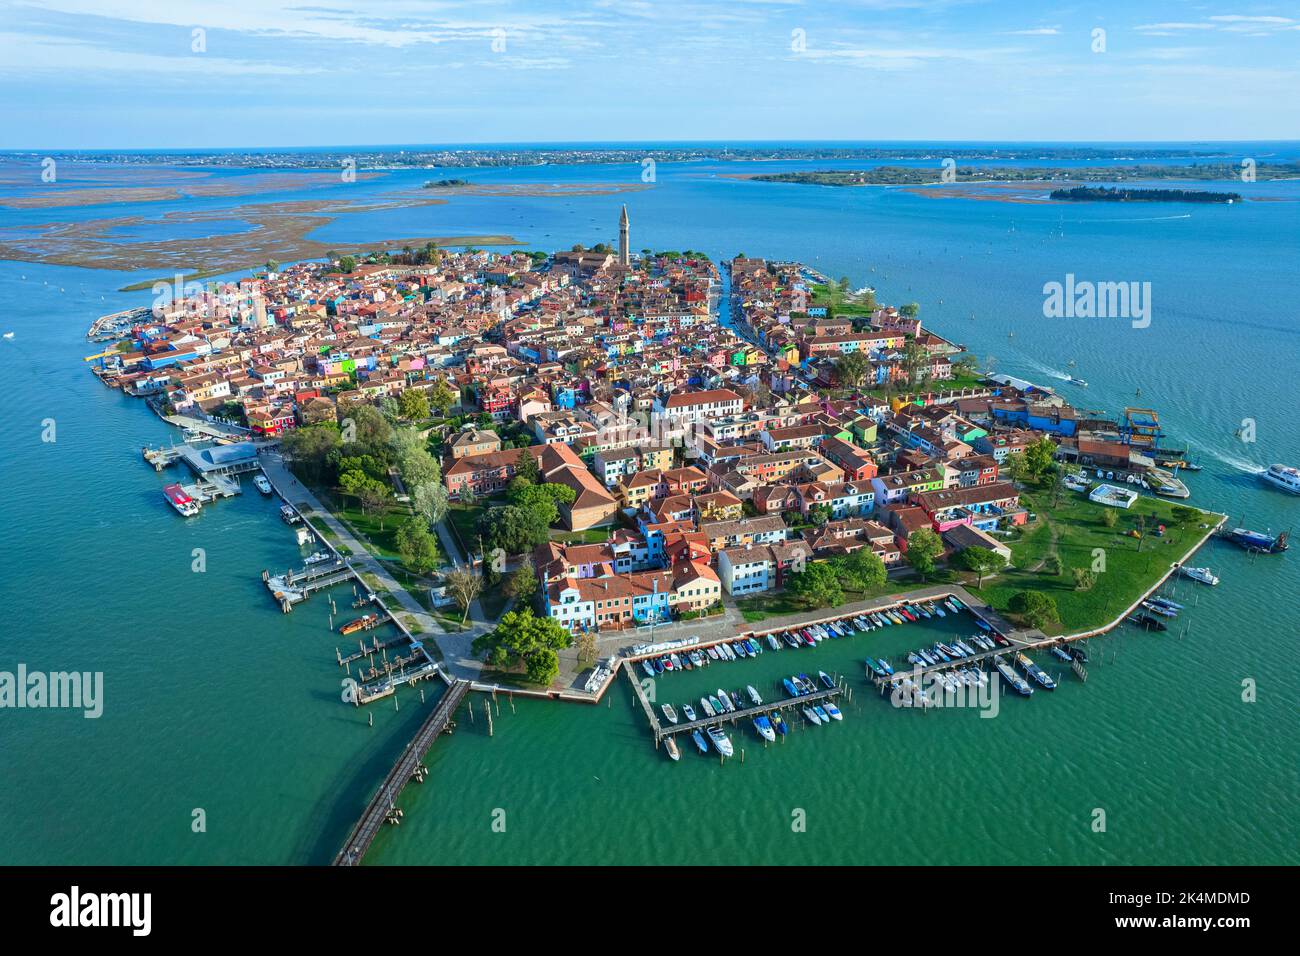 Veduta aerea dell'isola di Burano. Burano è una delle isole di Venezia, famosa per le sue case colorate. Burano, Venezia - Ottobre 2022 Foto Stock